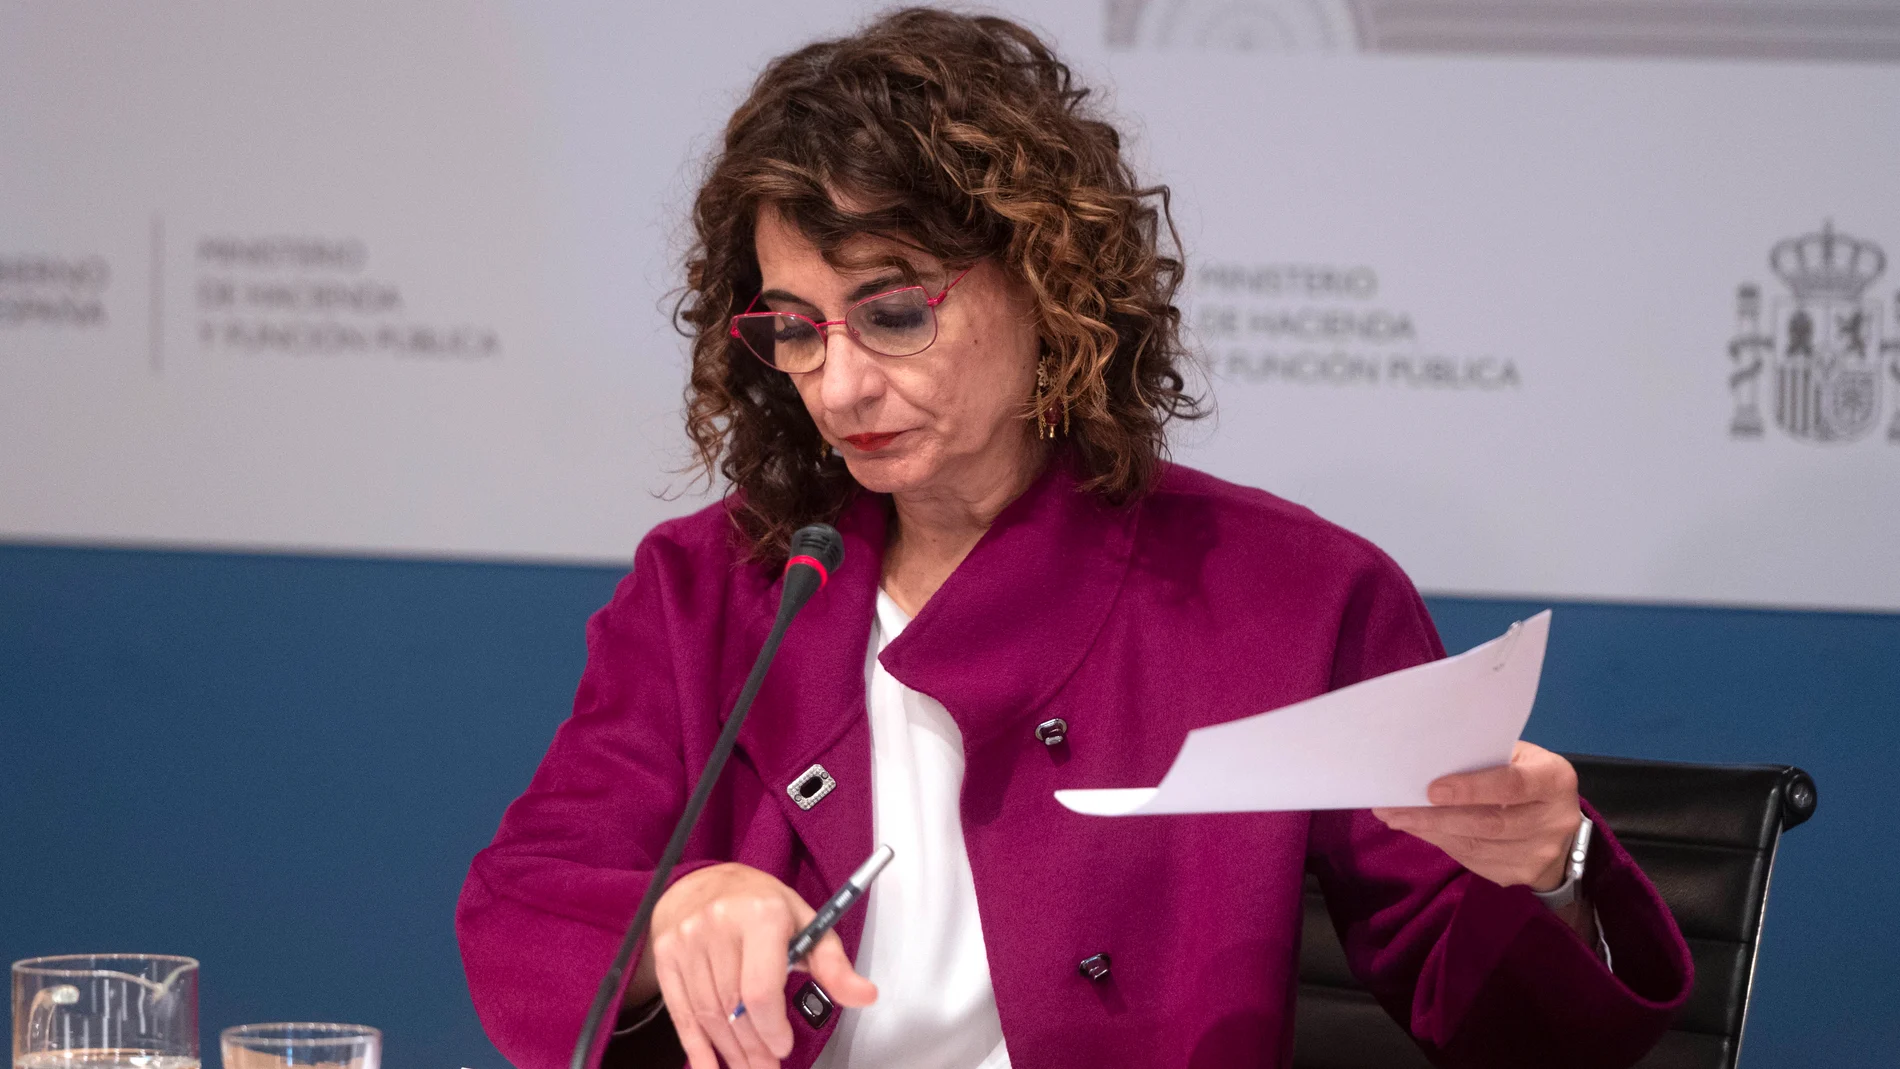 La ministra de Hacienda y Función Pública, María Jesús Montero, comparece ante los medios para presentar un avance de los datos de cierre de recaudación tributaria correspondientes a 2021, en la Sede del Ministerio, a 27 de enero de 2022, en Madrid (España)